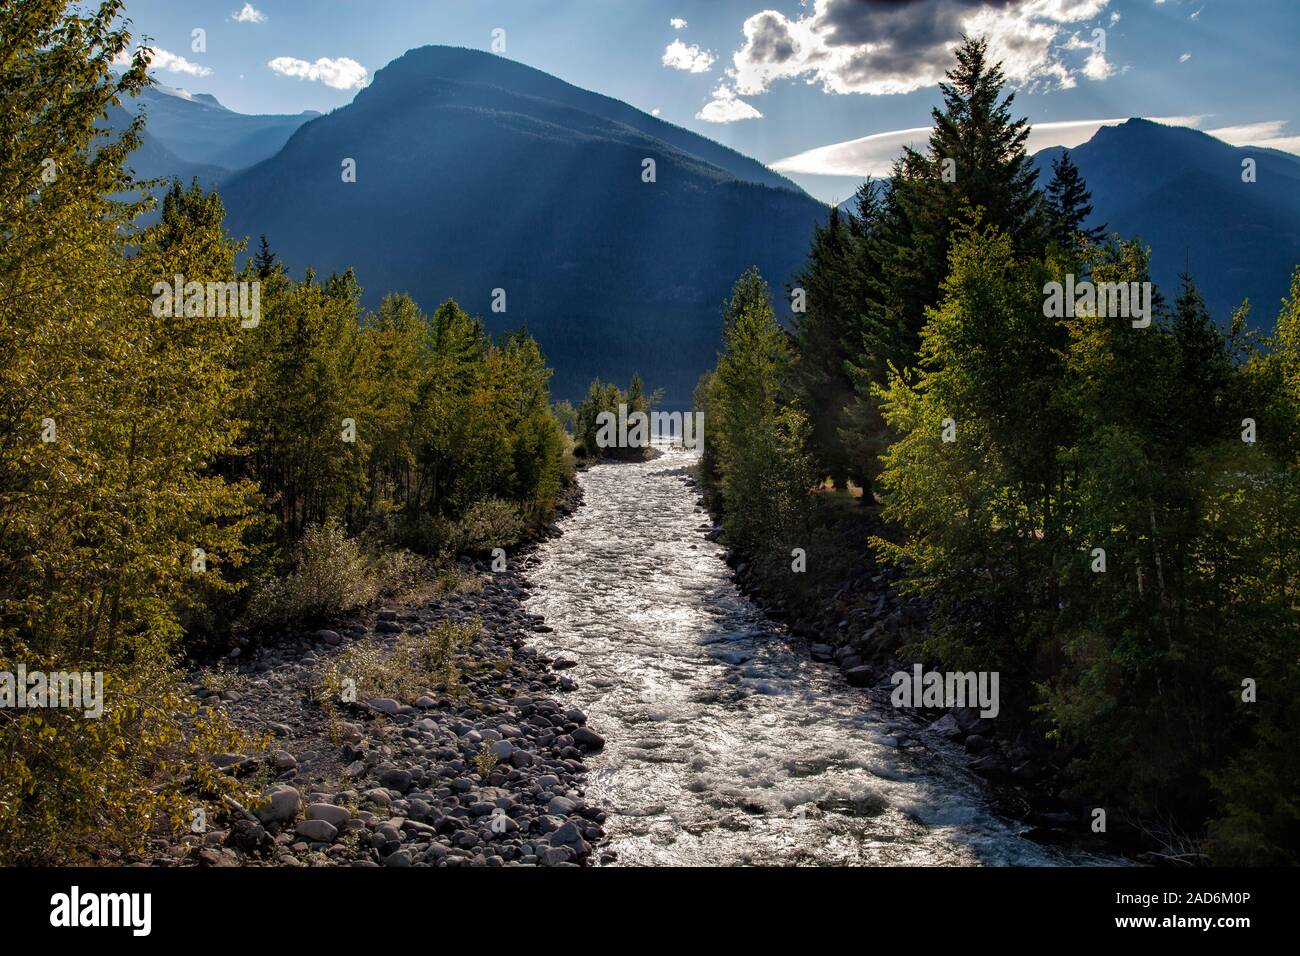 Carpenter Creek che scorre nel lago Slocan, Nuova Denver, Slocan Valley, West Kootenay, British Columbia, Canada Foto Stock